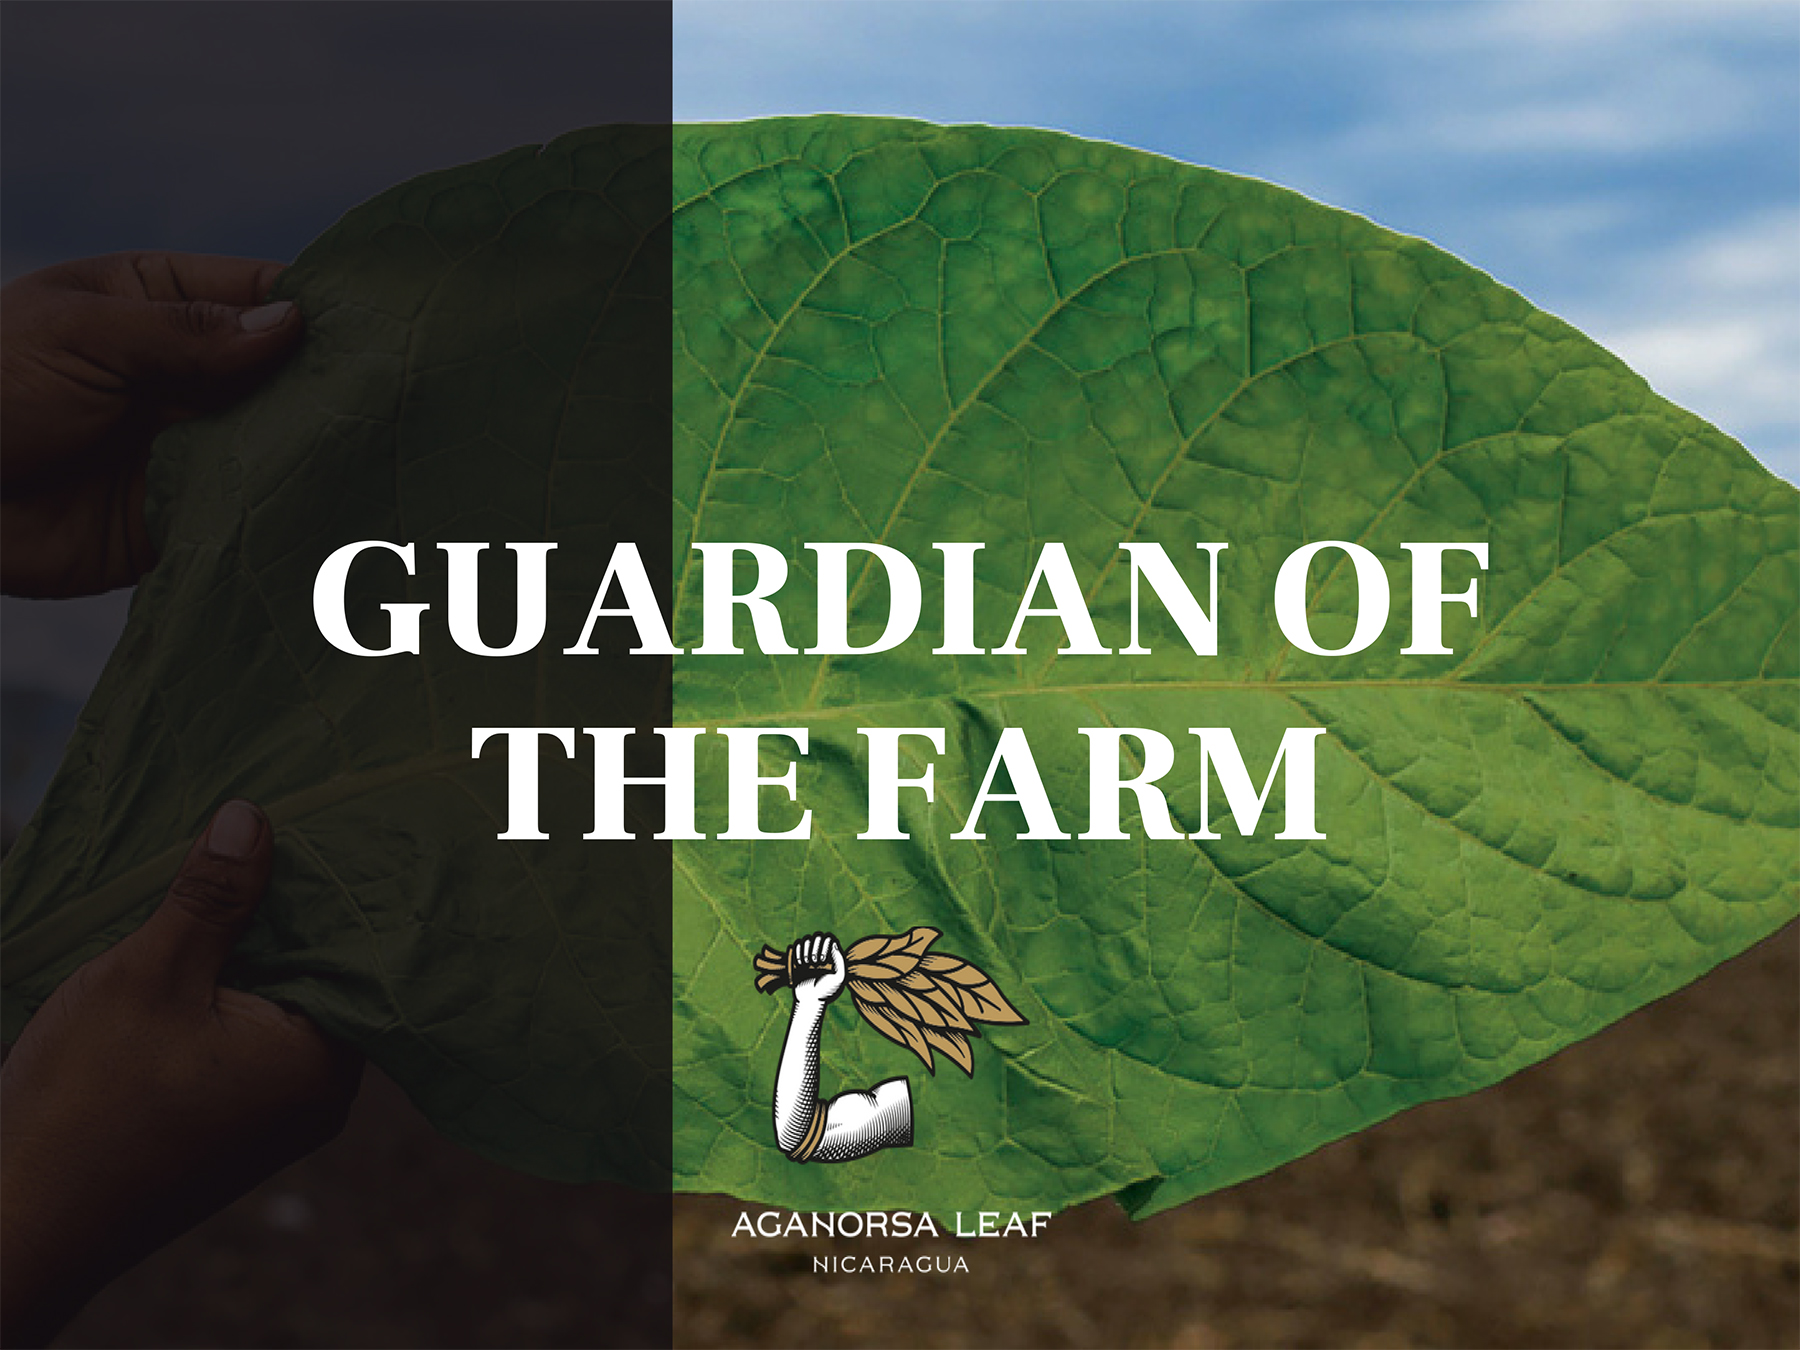 Guardian of the Farm : mais uma grande marca chega oficialmente no Brasil